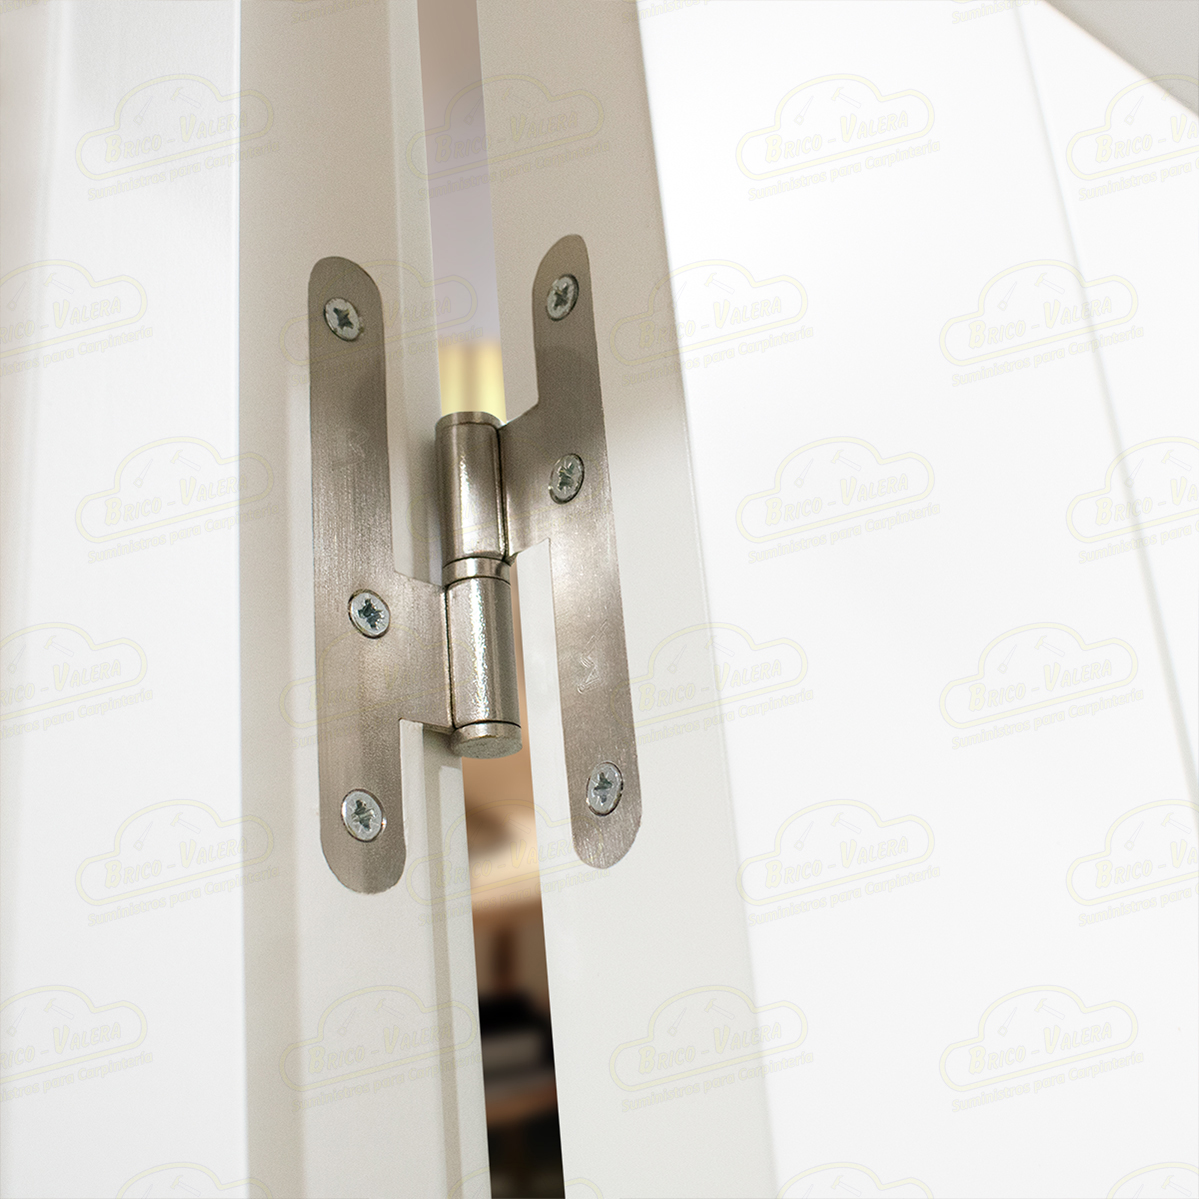 Puerta Doble de Salón con fijo P-12-V6 Lacada Blanca de Interior en Block (Maciza)